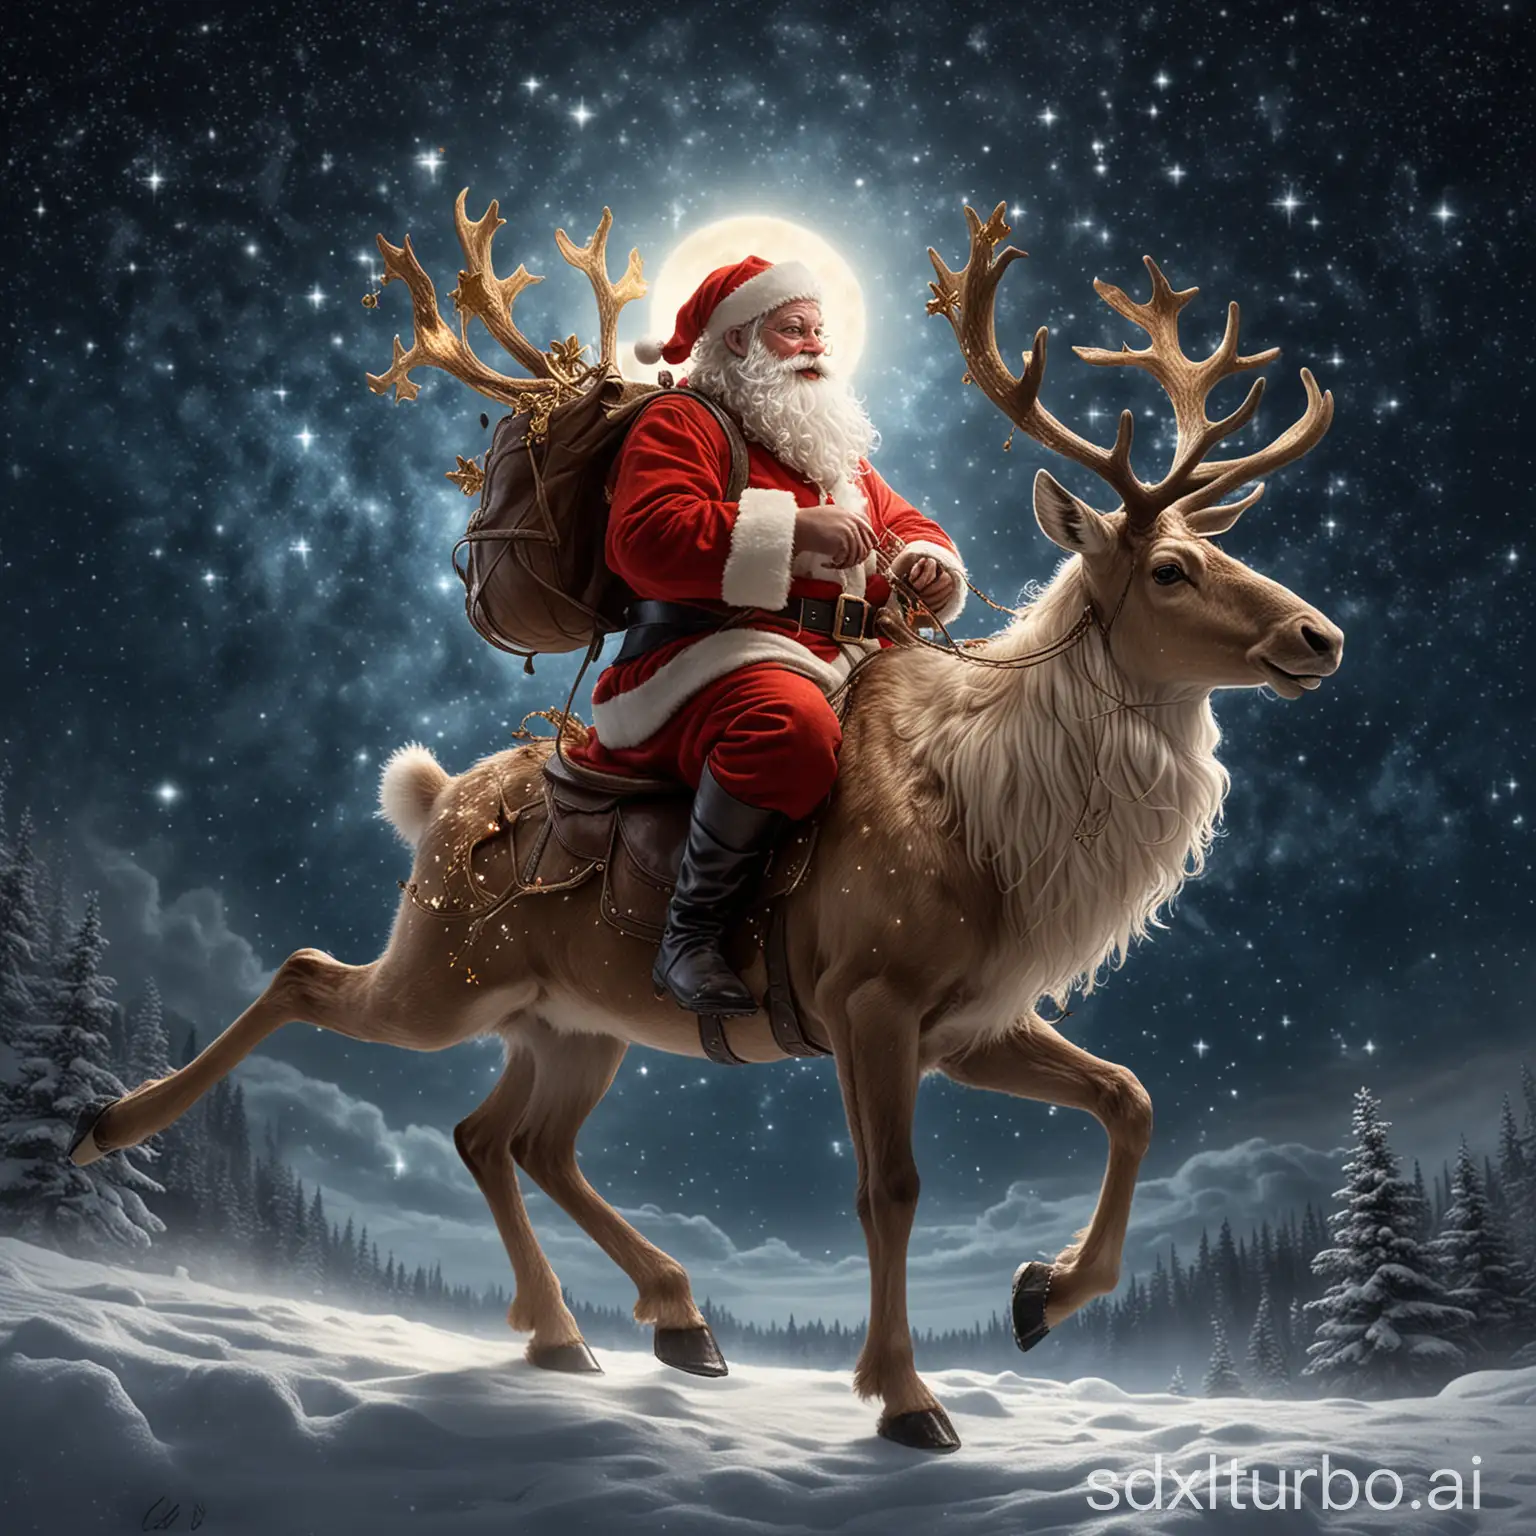 Santa, wie er auf einem glitzernden Flughirsch reitet, der ihn hoch in den Nachthimmel trägt, wo die Sterne seine einzigen Begleiter sind.